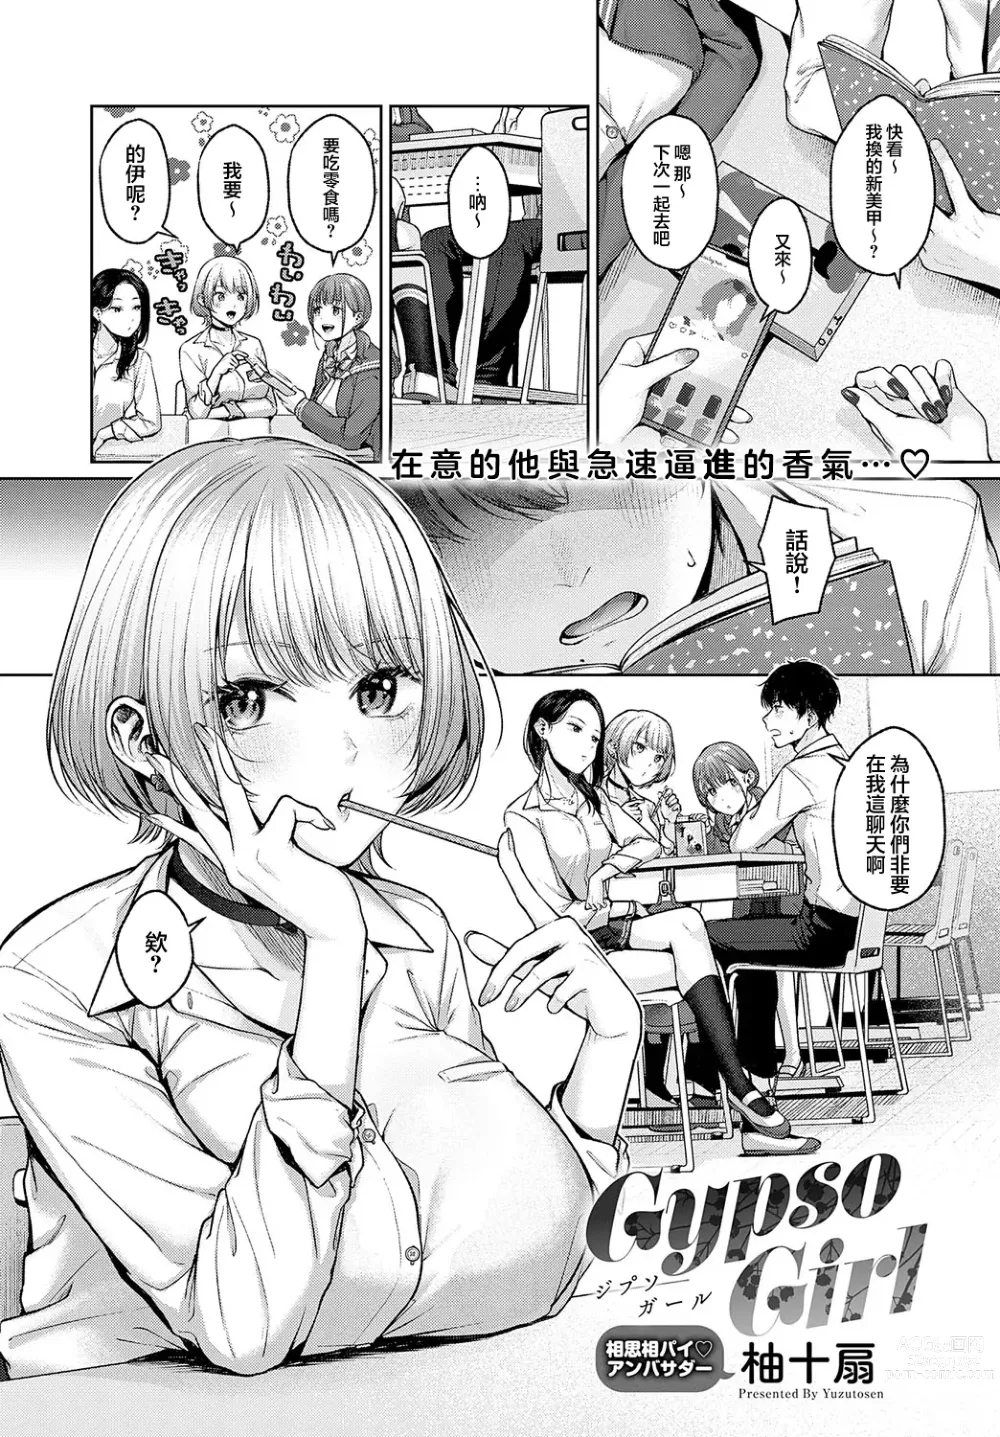 Page 1 of manga Gypso Girl